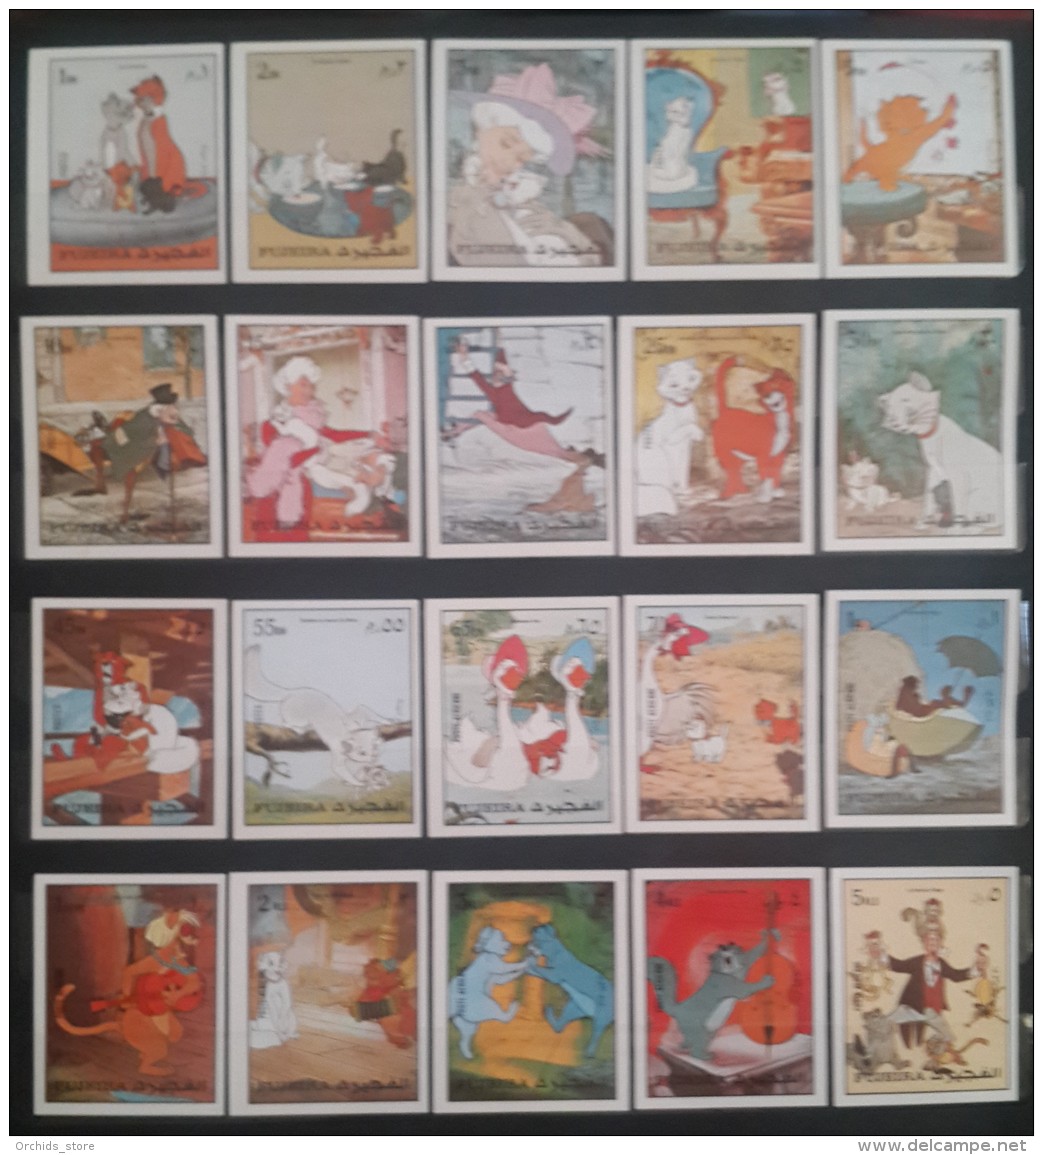 GS22 - Fujeira 1972 Mi. 1510-152 Complete Set 20v. ImperforateMNH - Walt Disney Film Pongo And Perdita Cartoons Comics - Fujeira